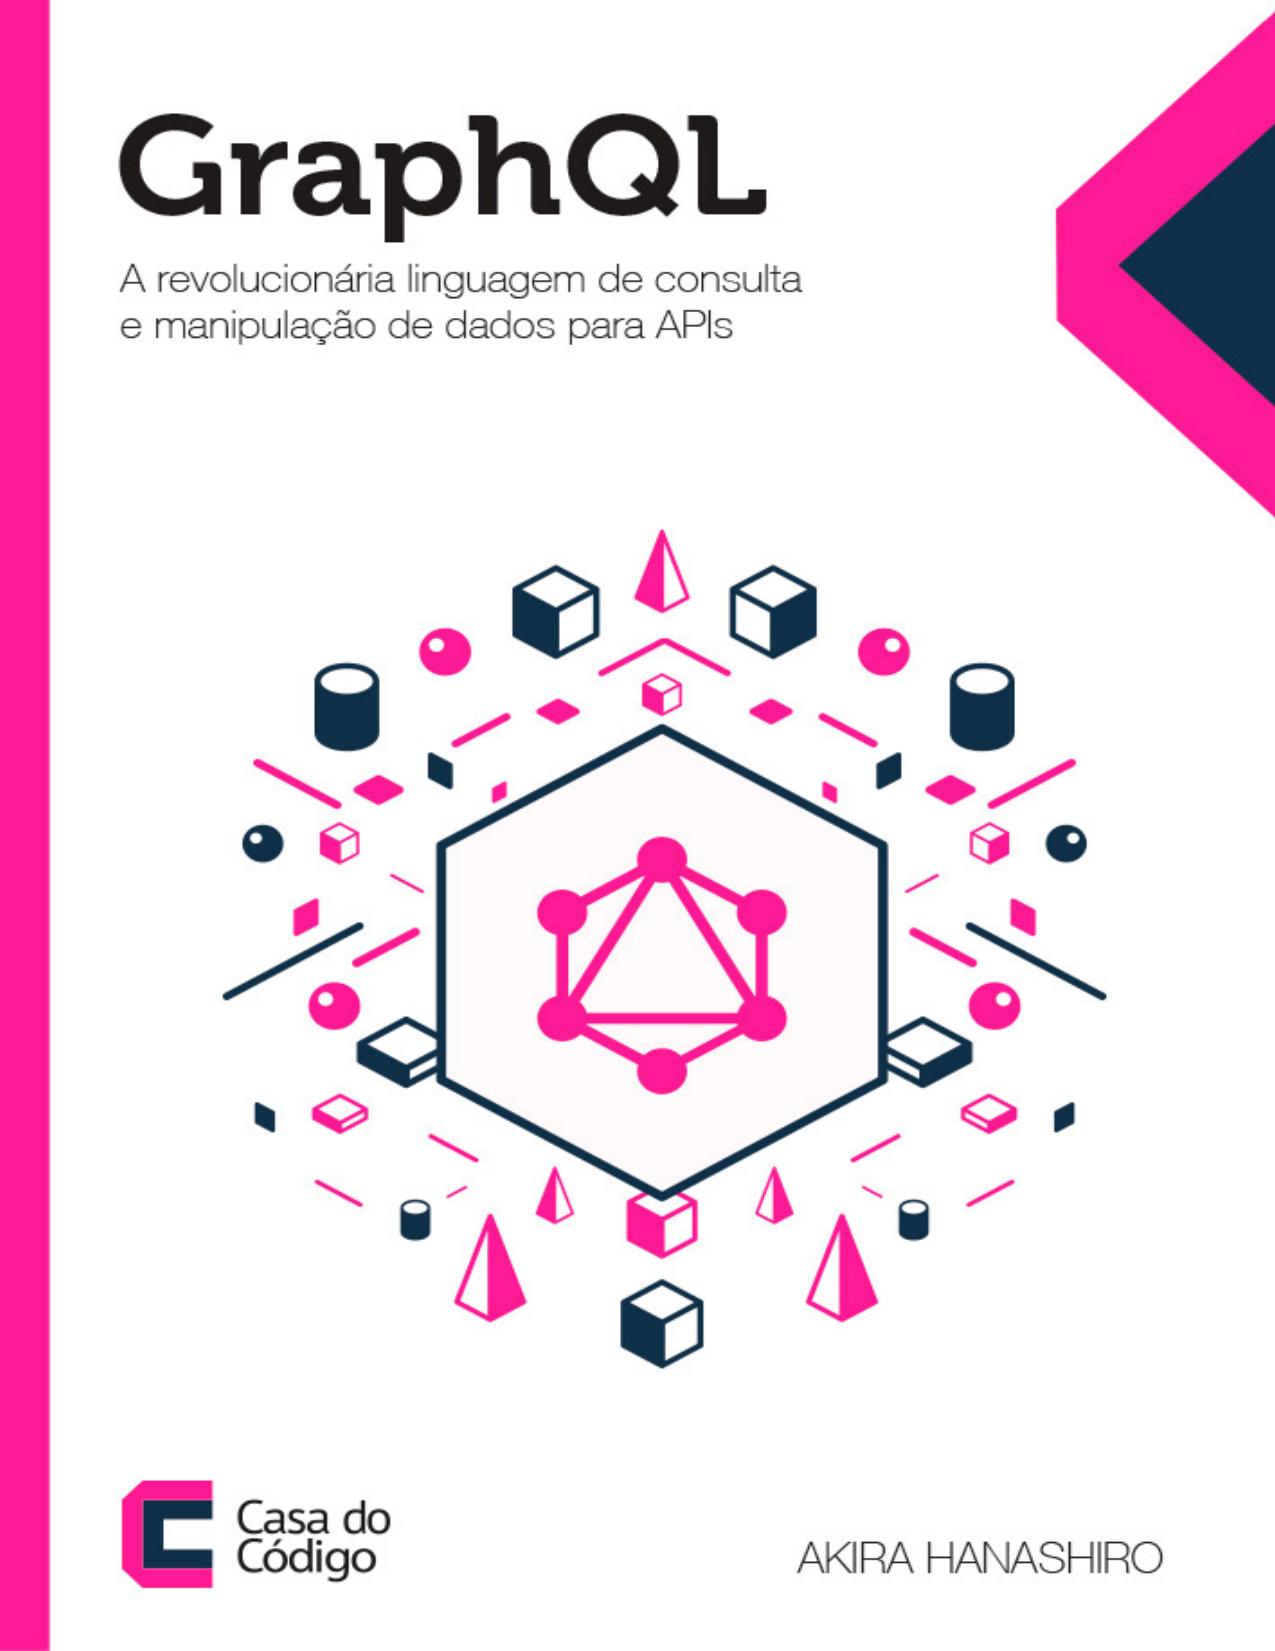 GraphQL - A Revolucionária linguagem de consulta e manipulacao de dados para APIs